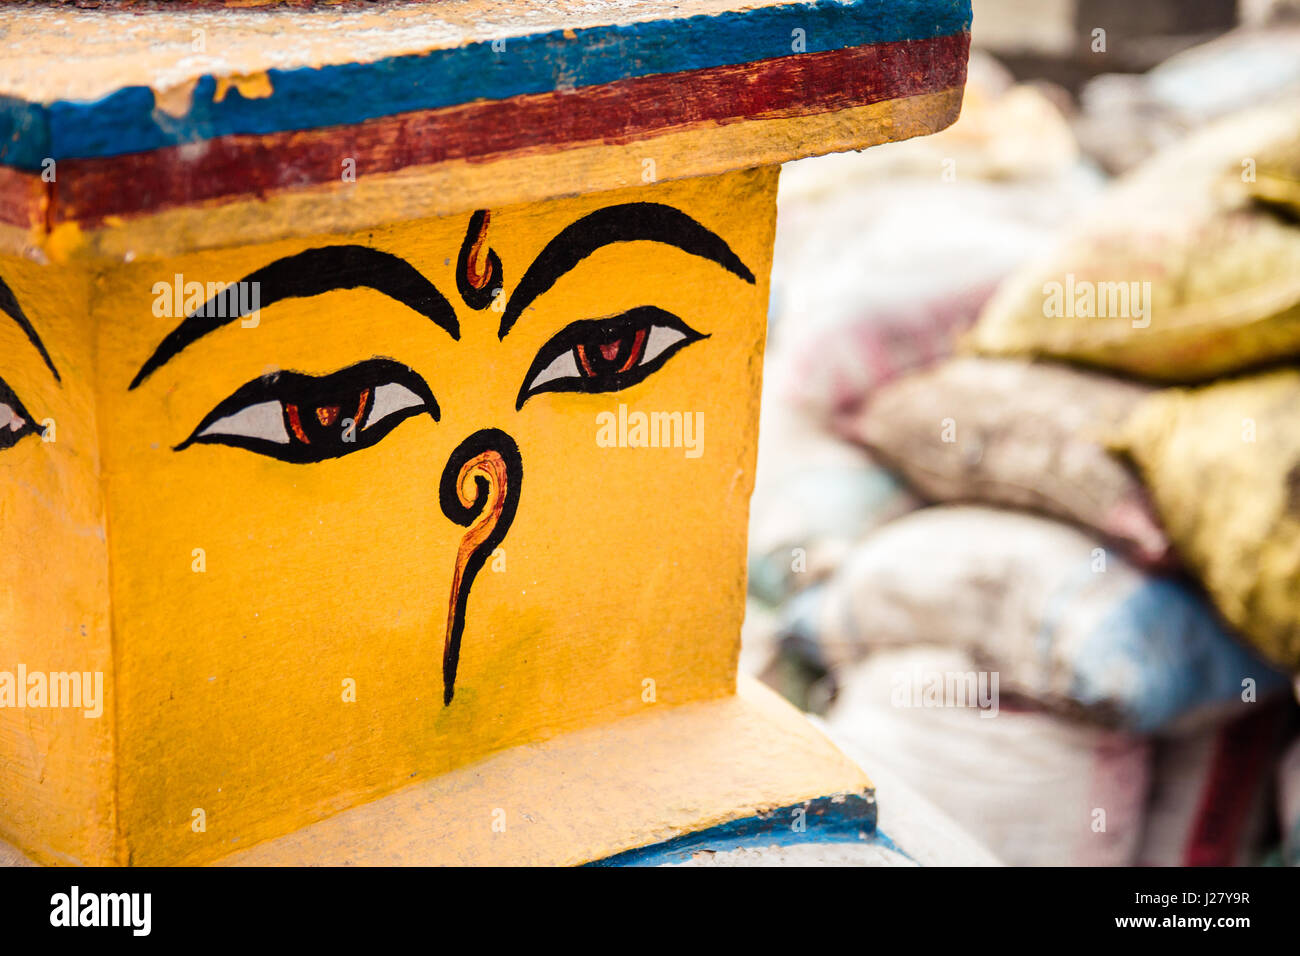 Buddhas Augen, auch bekannt als Weisheit auf eine Stupa in Nepal. Hintergrund von Baustoffen (Sandsäcke), eines der vielen Bau Websites presen Stockfoto